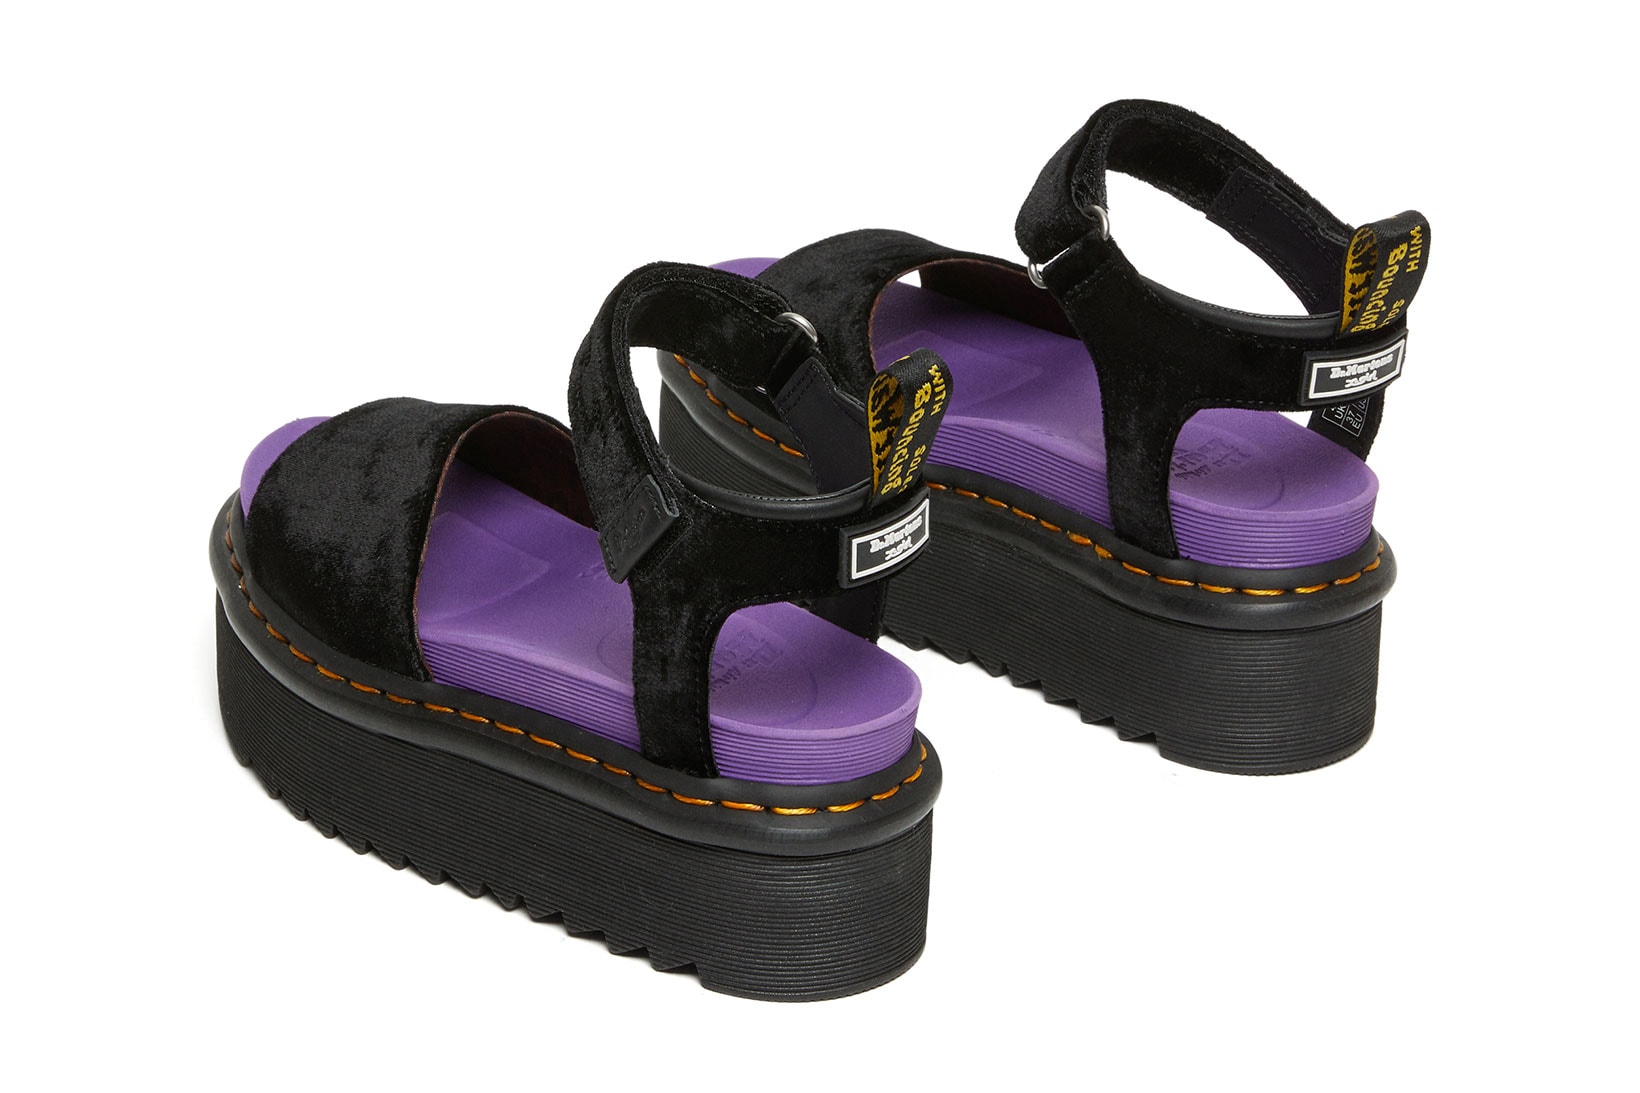 dr martens x-girl collaboration strap sandals platform